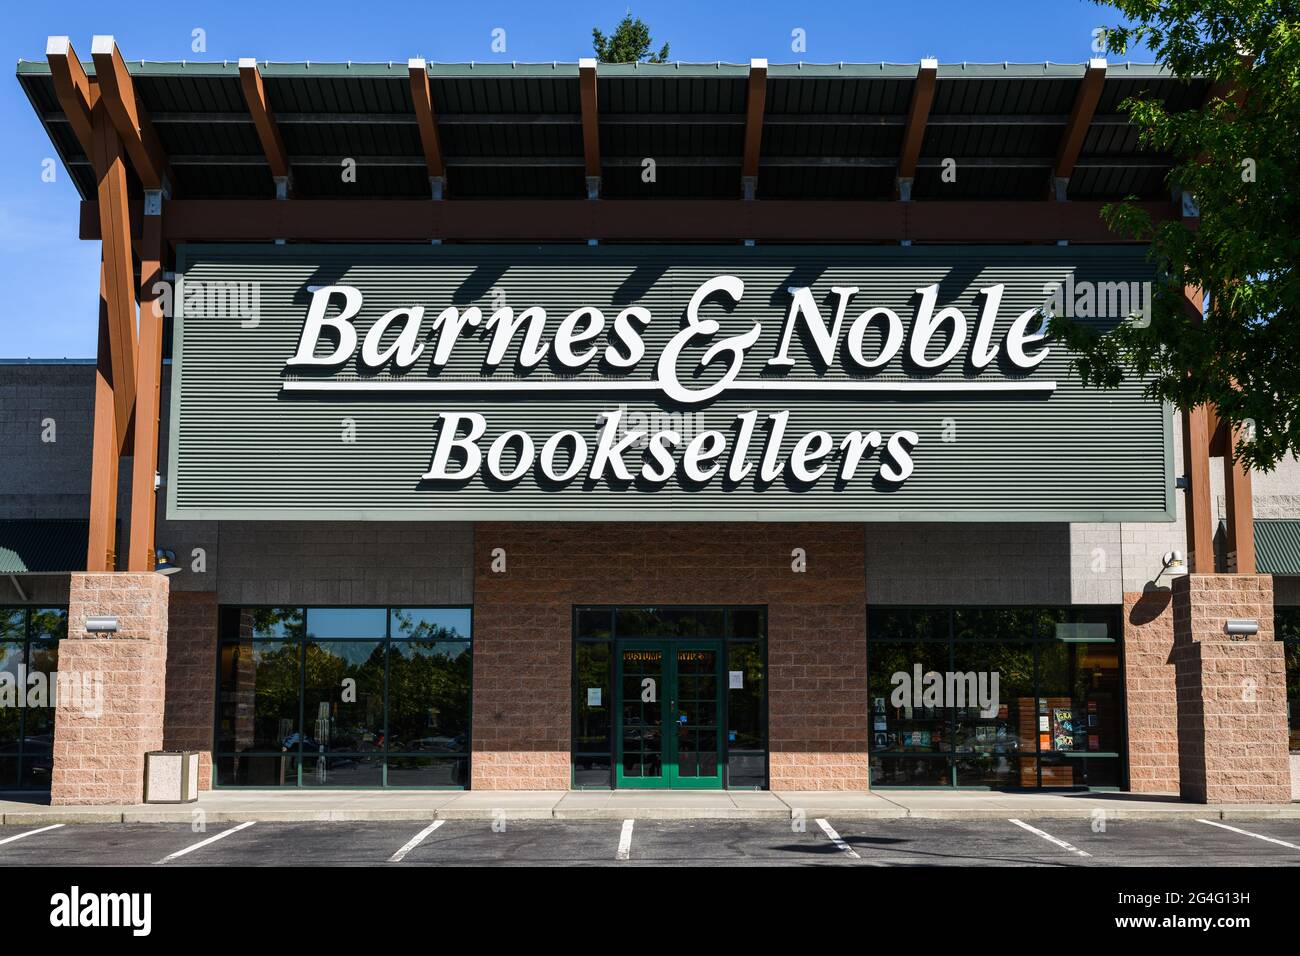 Woodinville, WA, États-Unis - 20 juin 2021; avant du magasin Barnes and Noble Booksellers à Woodinville, Washington. Il n'y a pas de gens et pas de voitures Banque D'Images